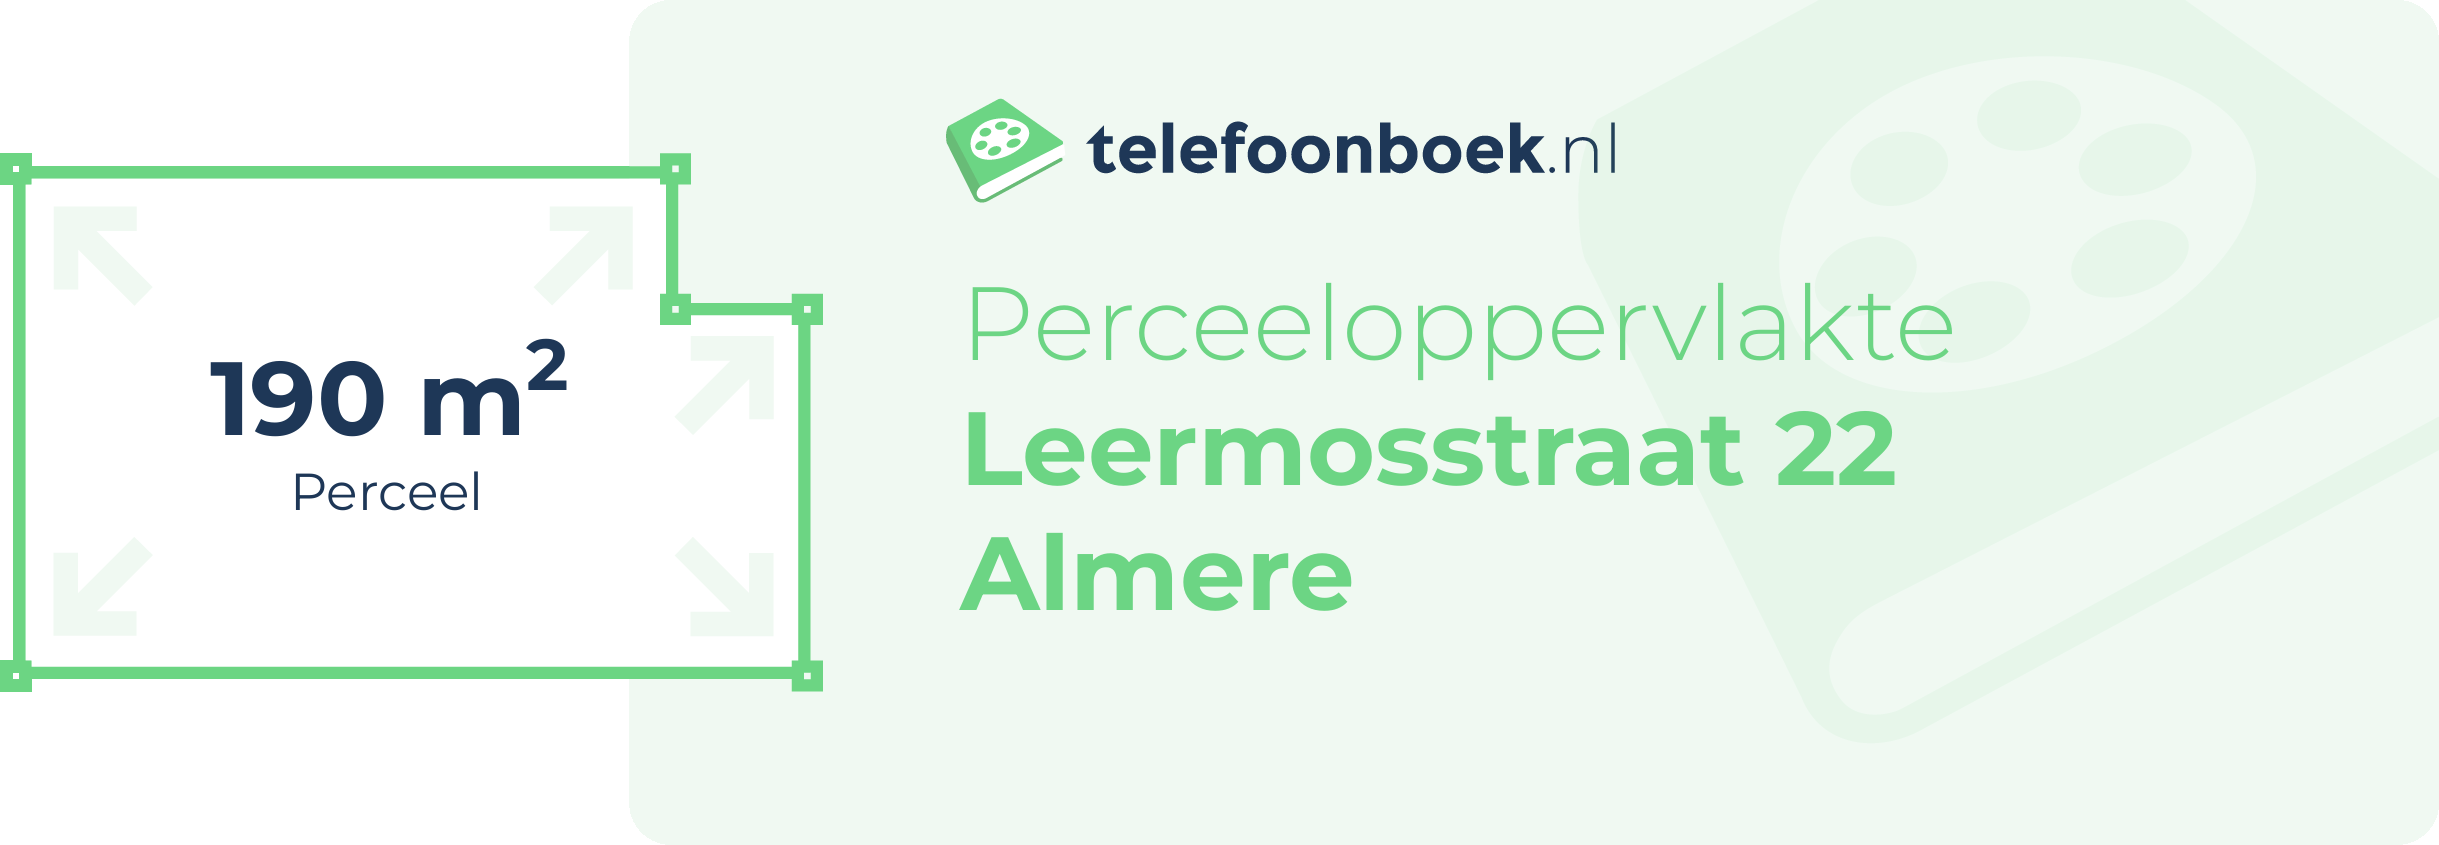 Perceeloppervlakte Leermosstraat 22 Almere